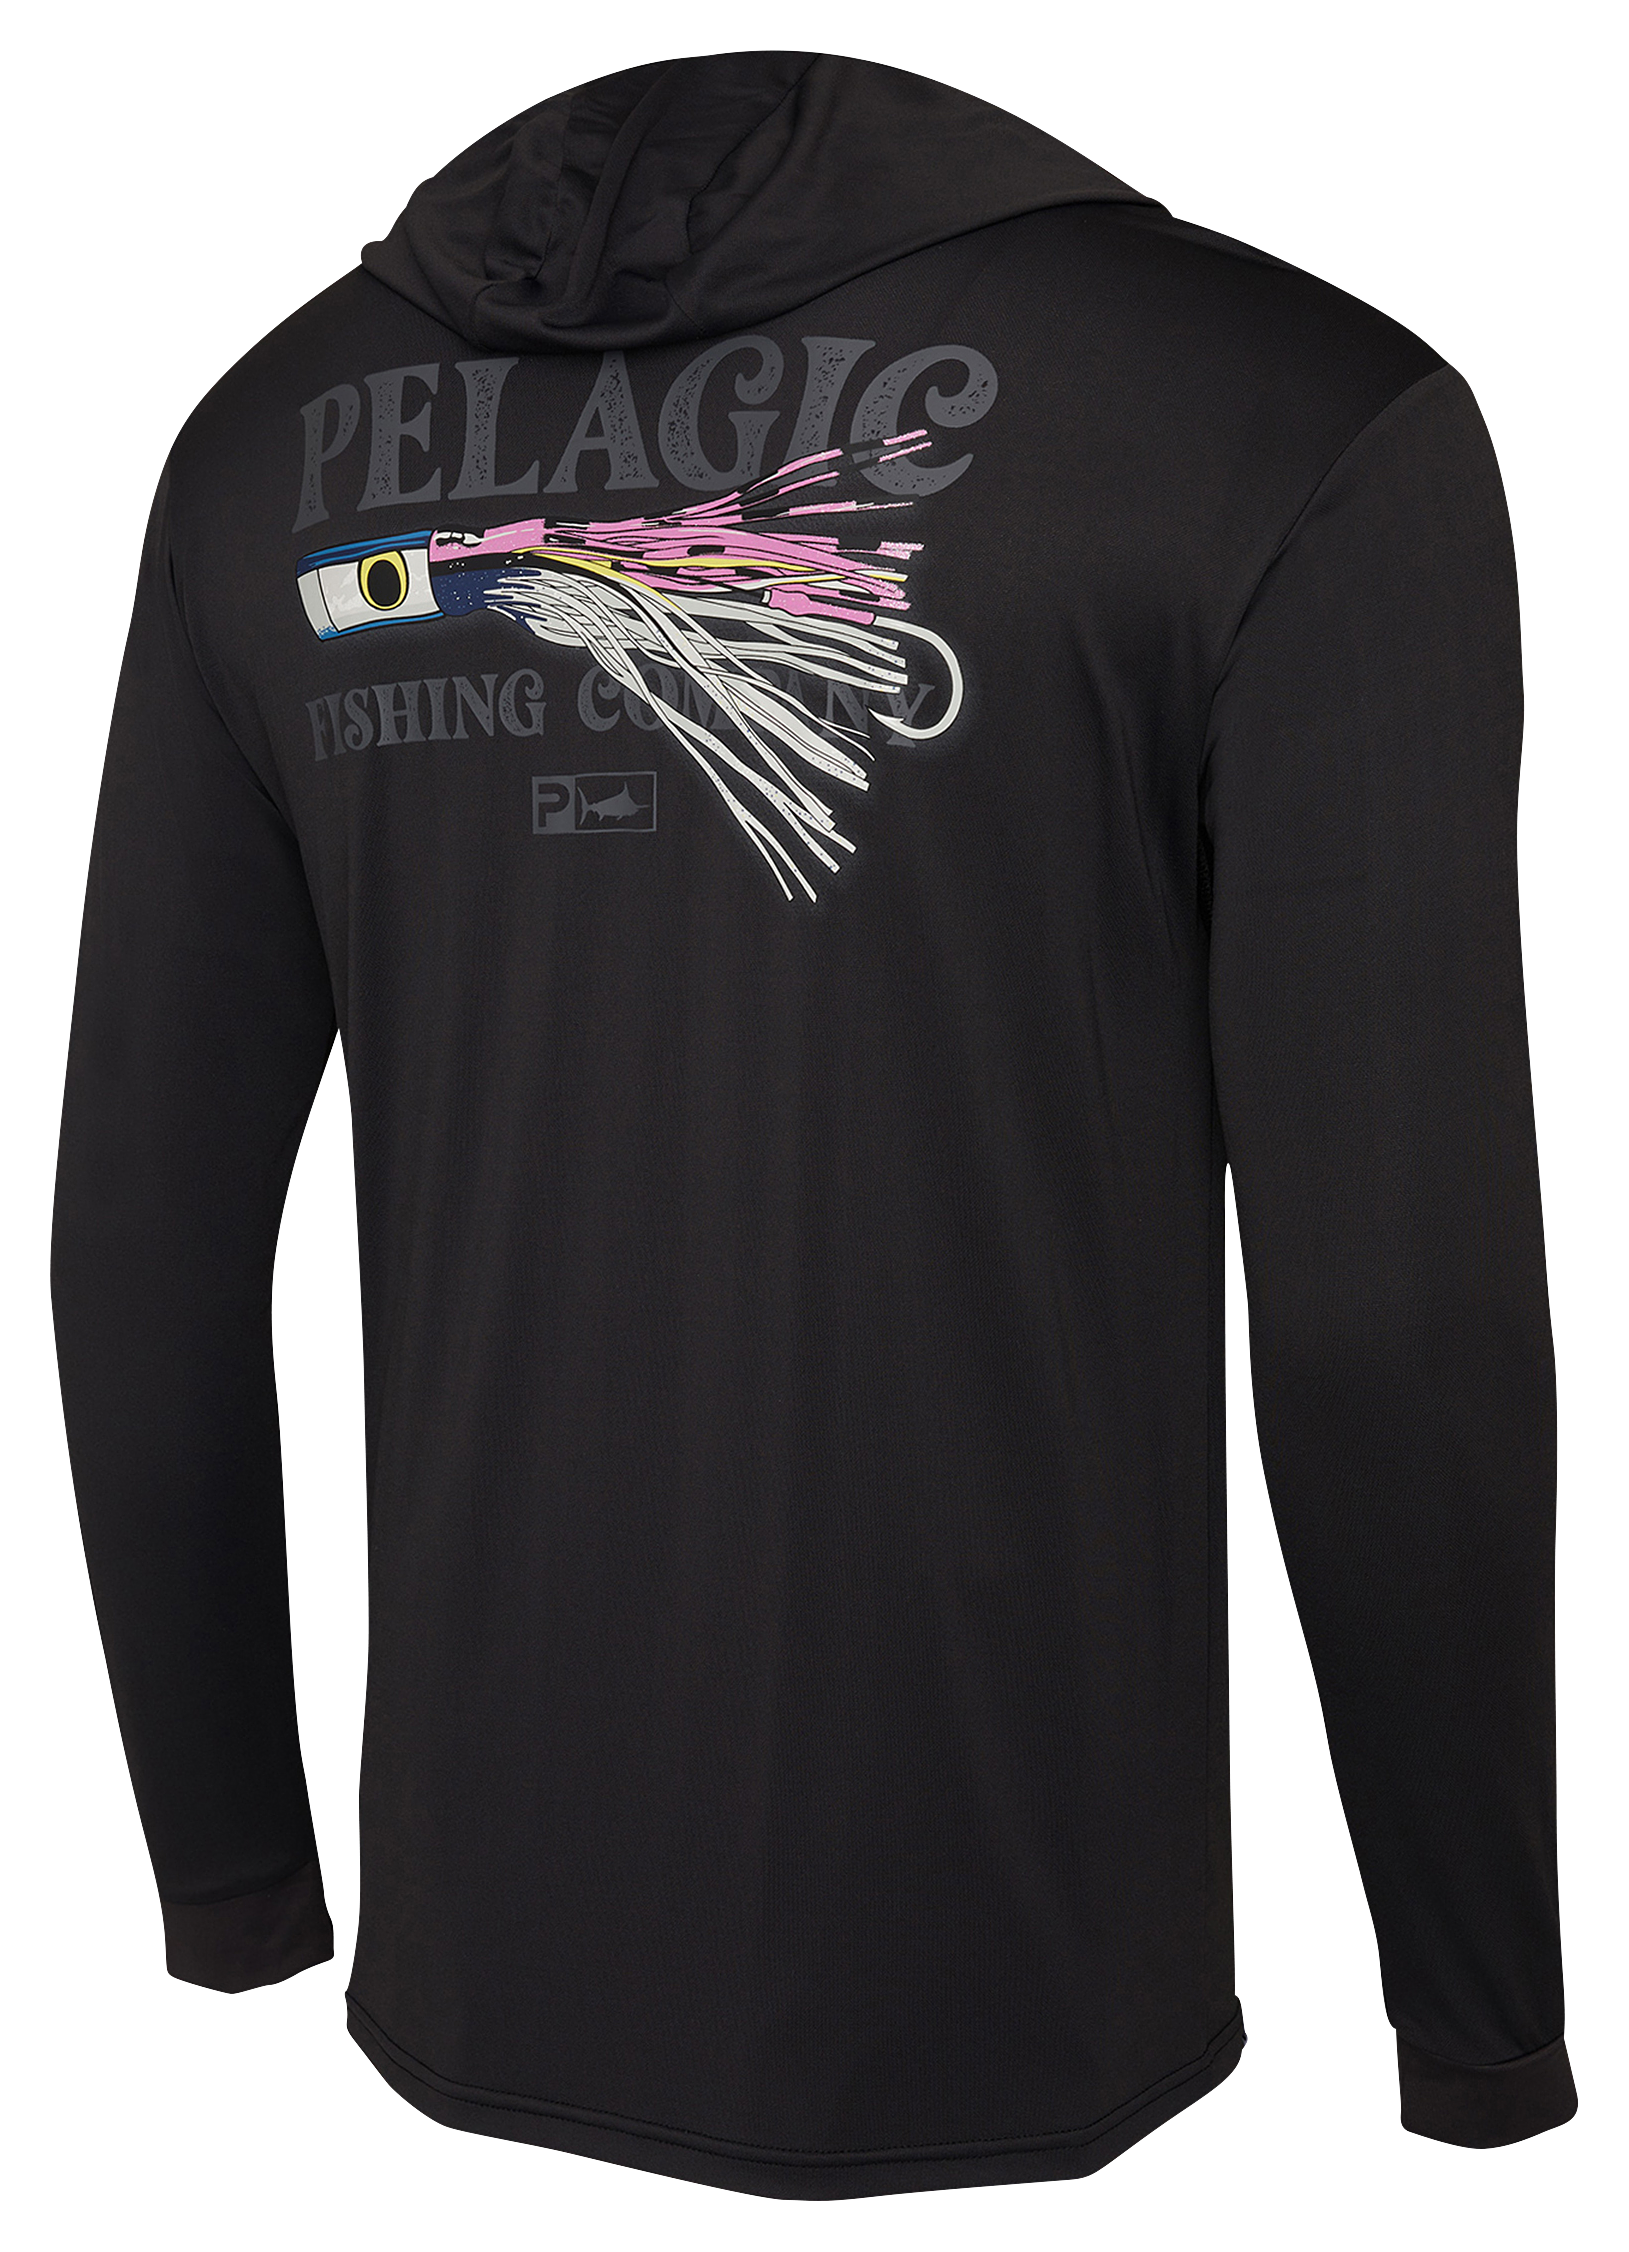 Pelagic Aquatek Lured Hooded Long-Sleeve Shirt for Men - Black/Lured - S